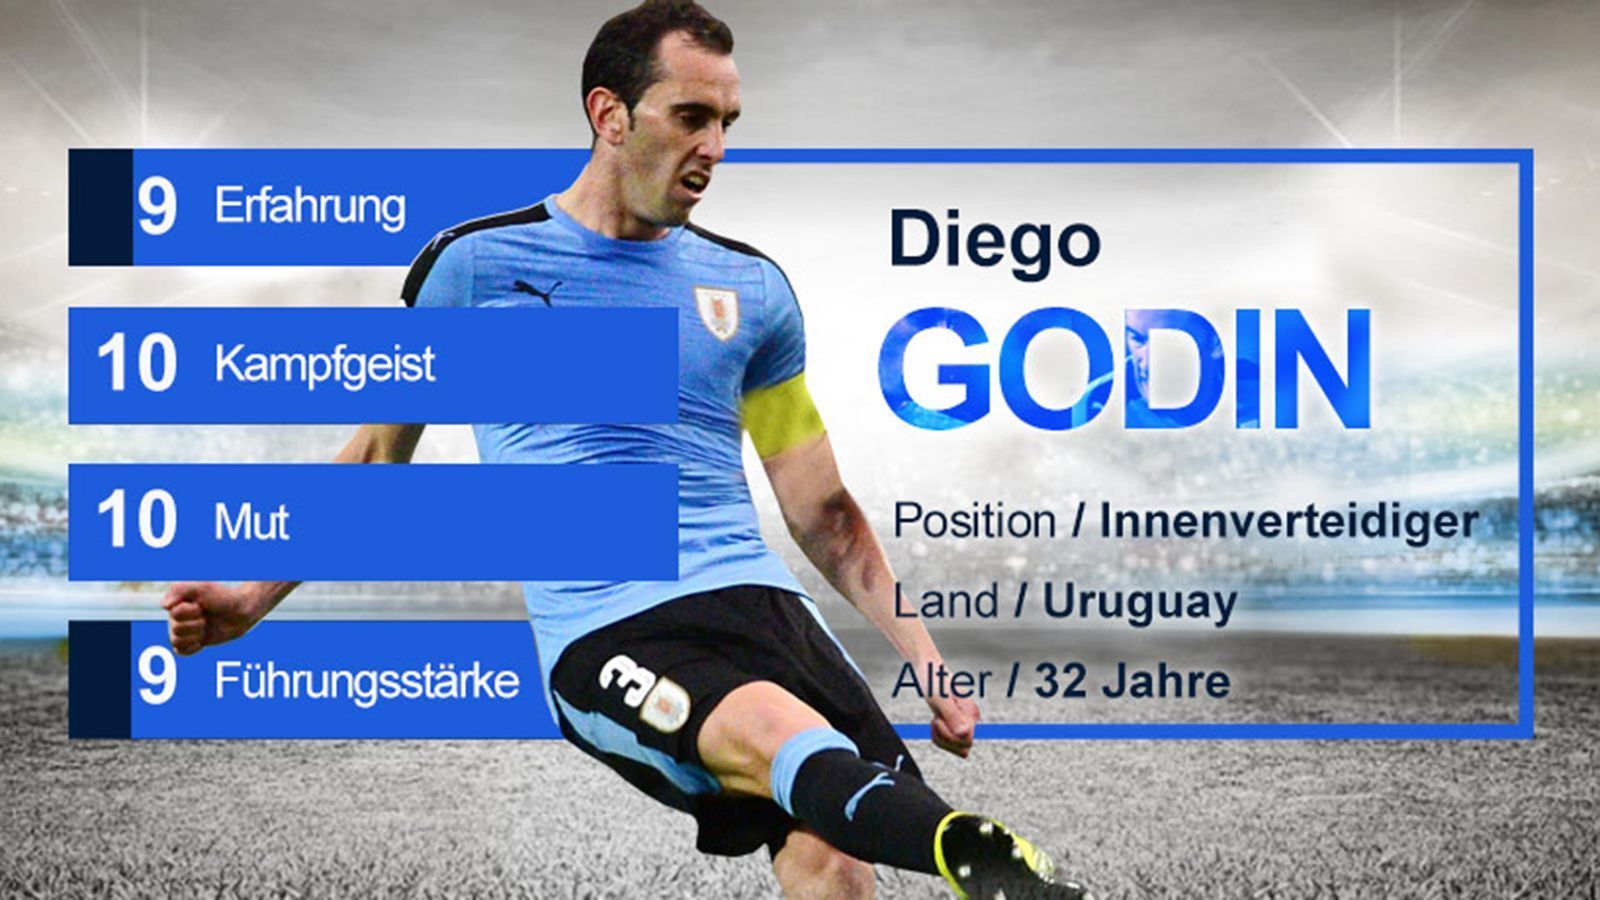 
                <strong>Diego Godin (Uruguay) - Gruppe A</strong><br>
                Diego Godin ist das defensive Gewissen der "Urus" und bekannt für seine kompromisslose Abwehrarbeit. Sowohl bei Atletico Madrid als auch in der Nationalmannschaft ist er seit Jahren Führungsspieler und Respektsperson. Godin geht stets mit bestem Beispiel voran. Der 32-Jährige hat über 116 Länderspiele bestritten und nimmt in Russland an seiner dritten Weltmeisterschaft nach 2010 und 2014 teil, seiner zweiten als Kapitän.
              